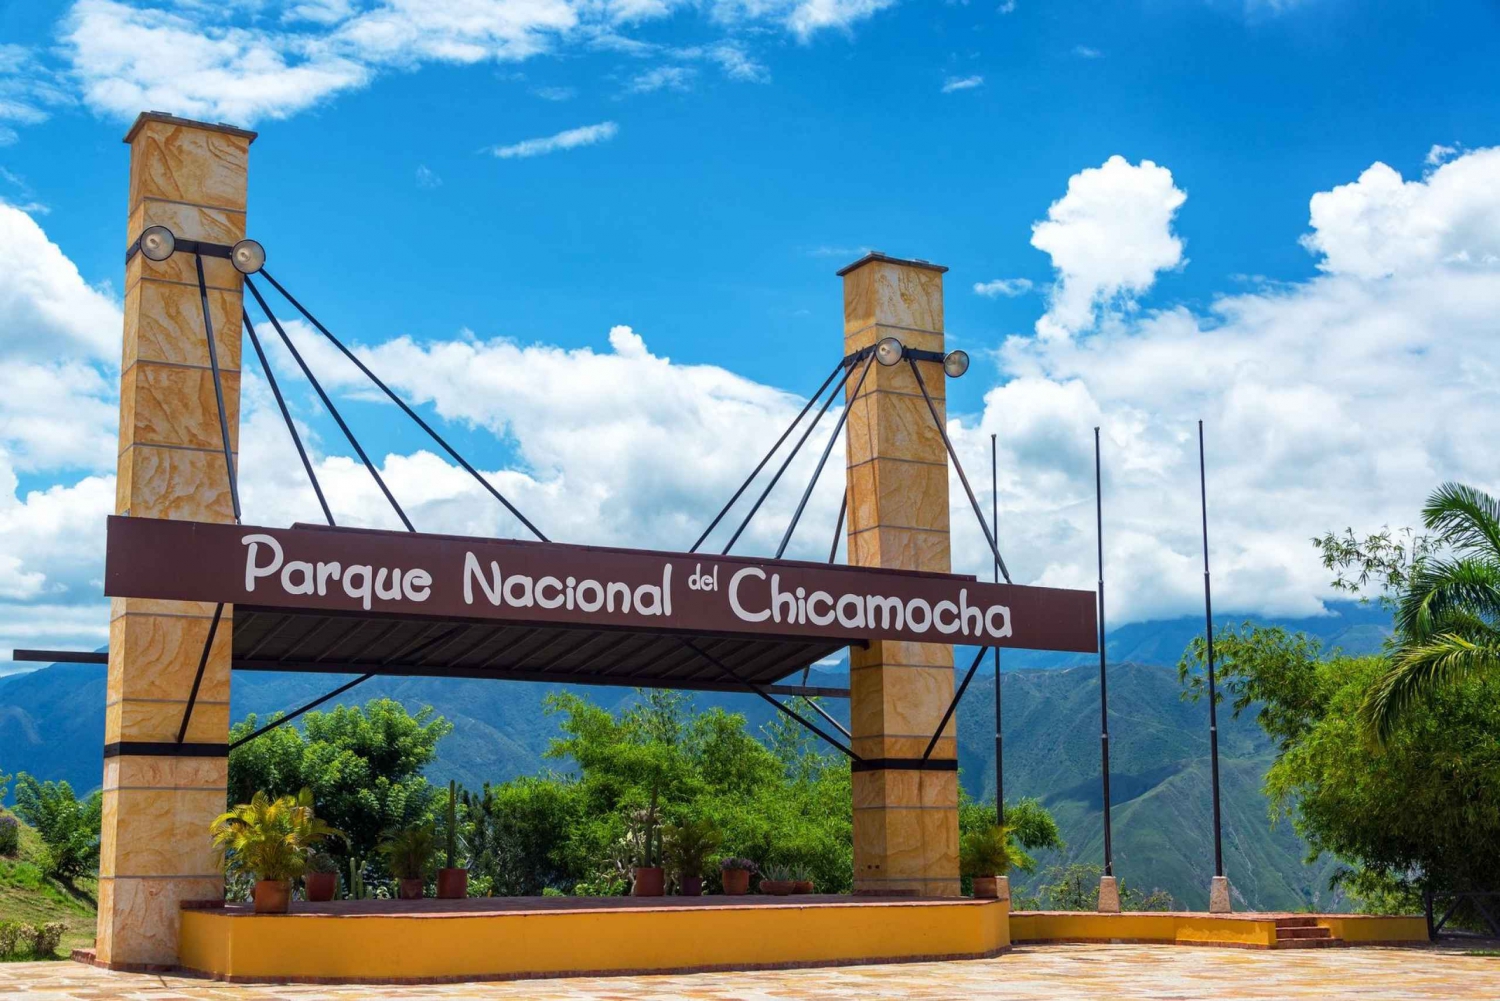 Excursión al Parque Nacional del Chicamocha (Teleférico incluido)